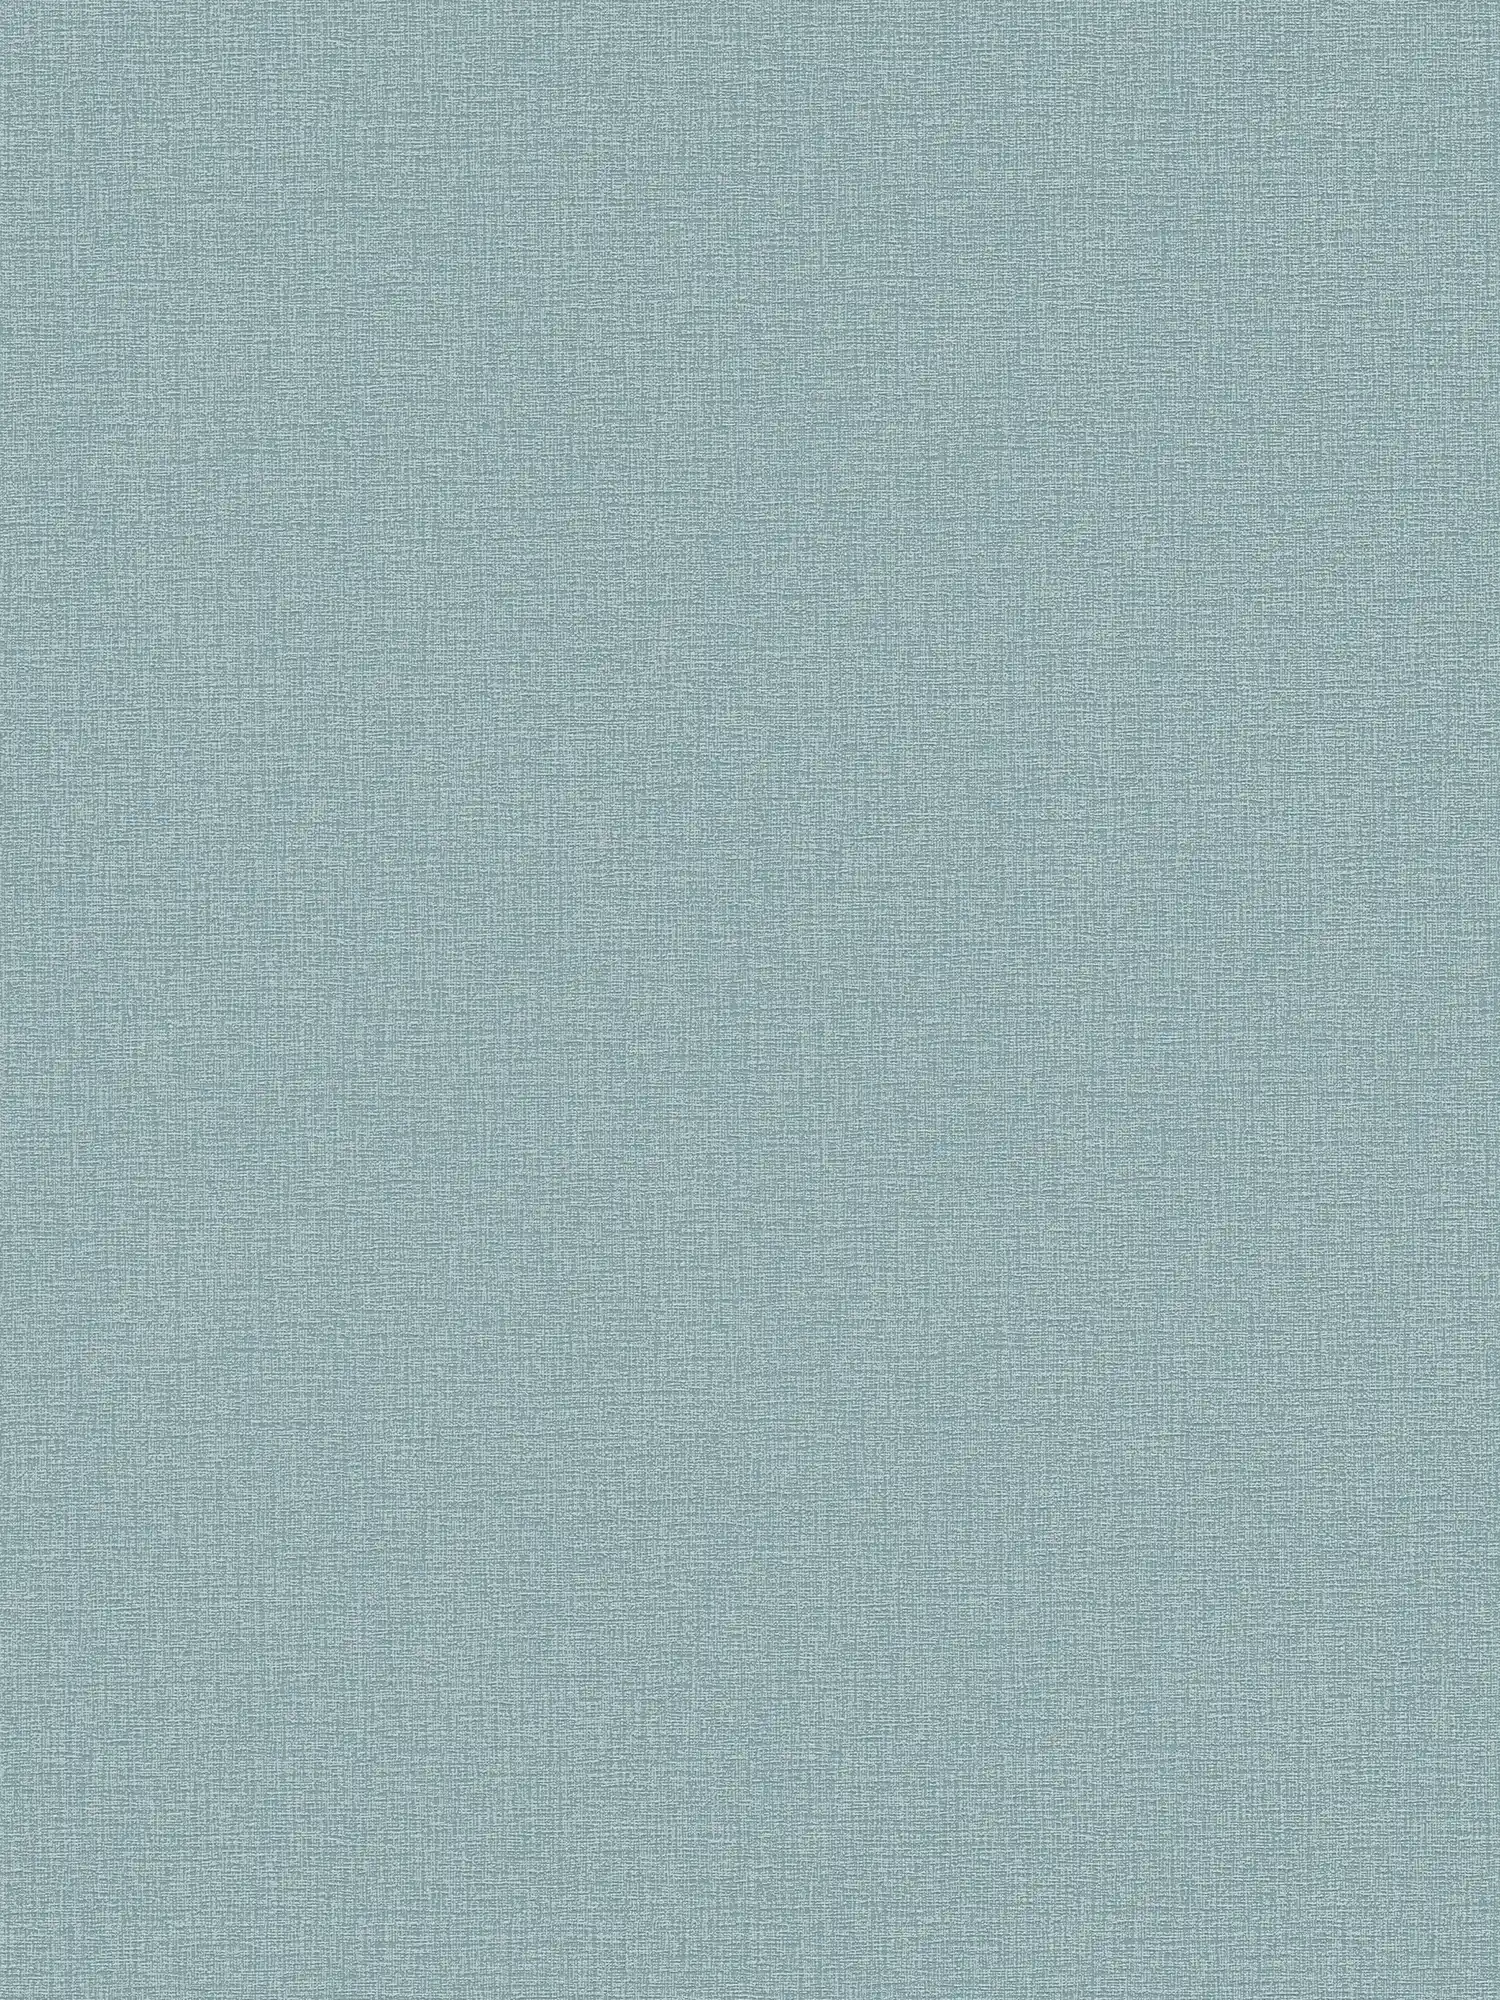 Papel pintado liso con textura ligera - azul, turquesa, petróleo
